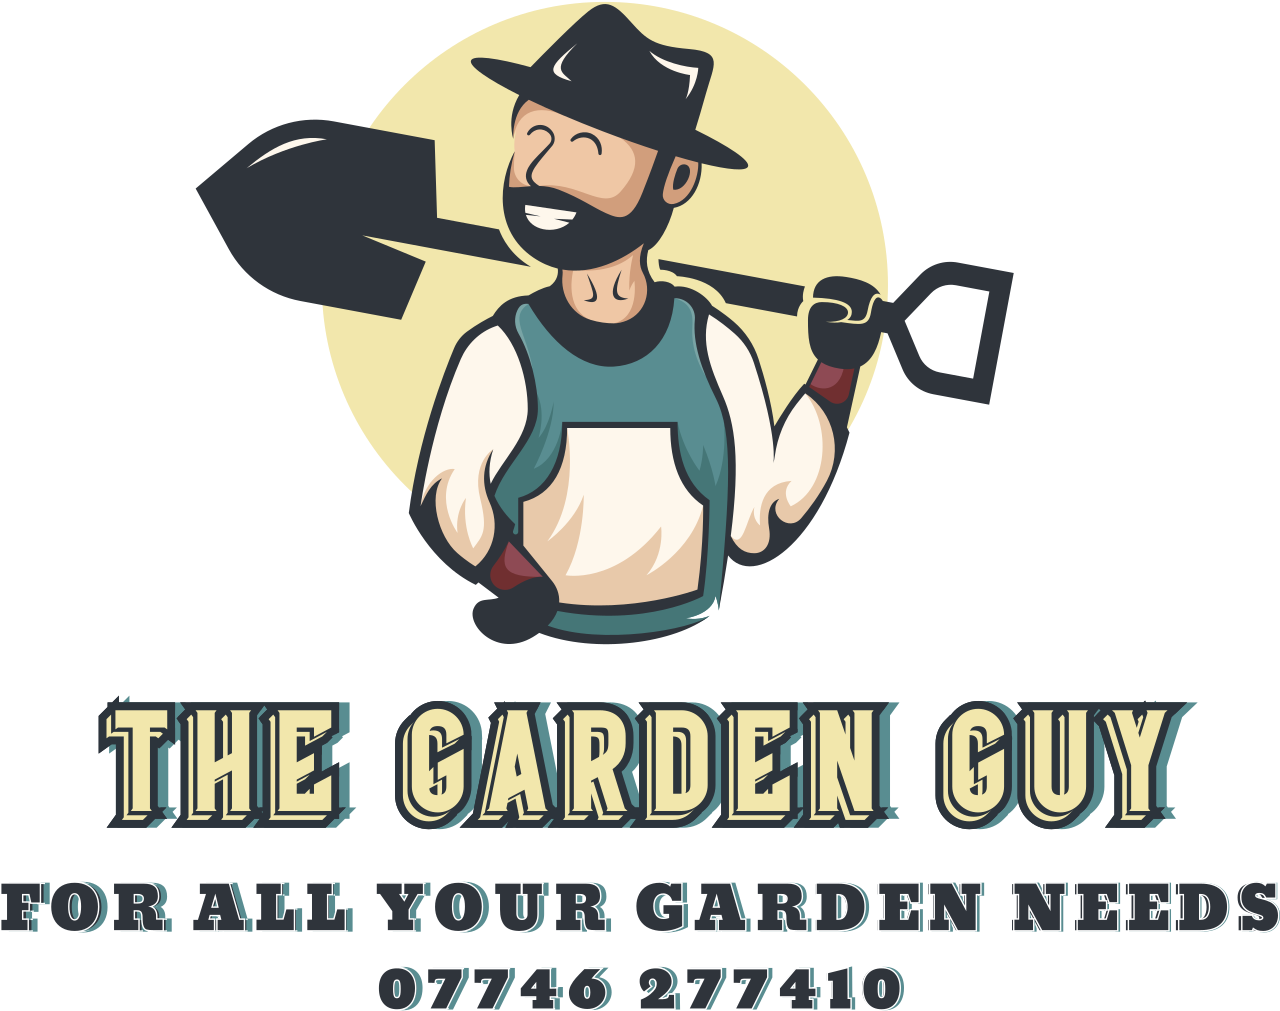 The Garden Guy's logo